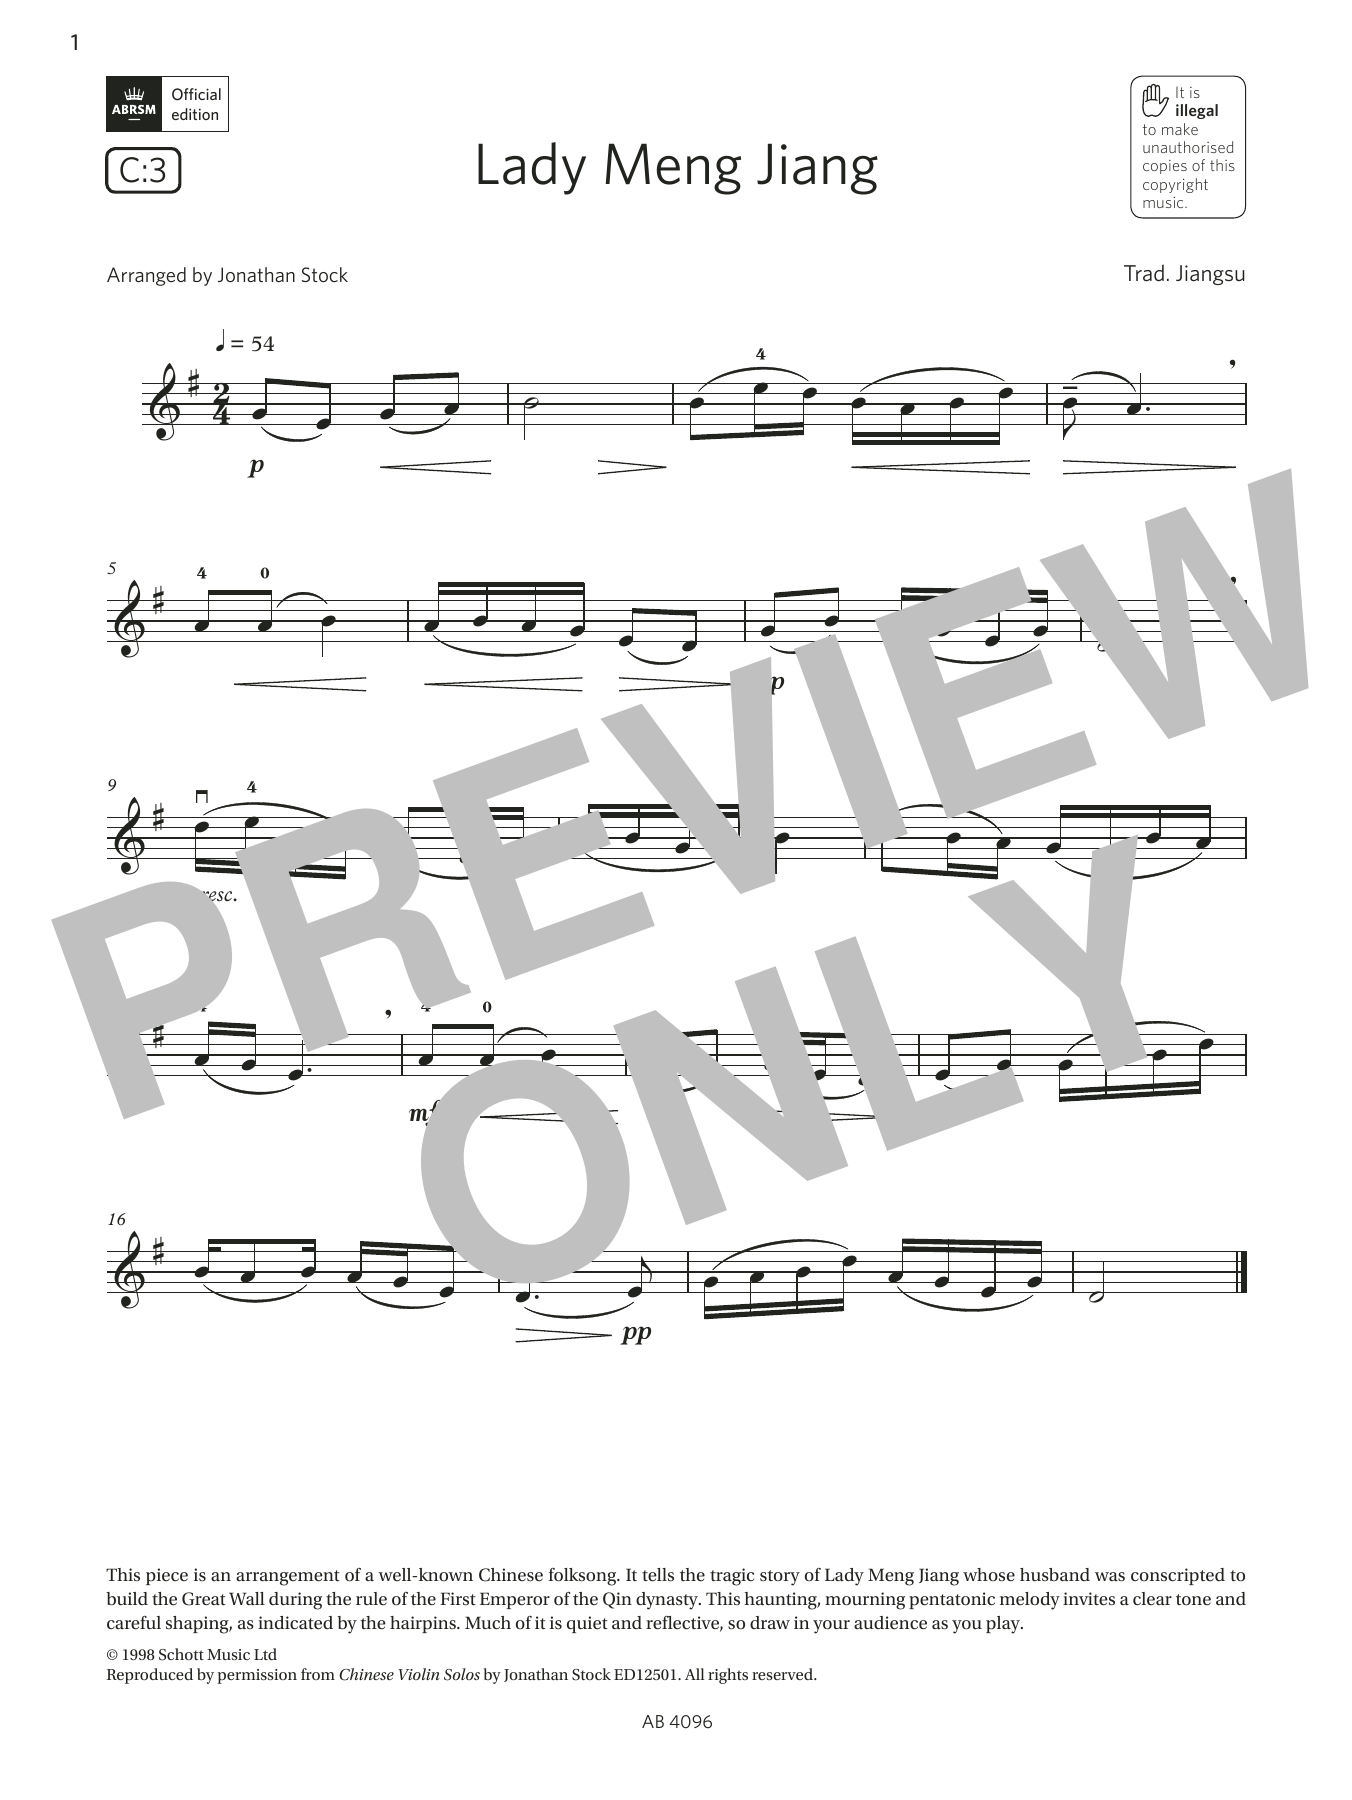 Trad. Jiangsu Lady Meng Jiang (Grade 2, C3, from the ABRSM Violin Syllabus from 2024) Sheet Music Notes & Chords for Violin Solo - Download or Print PDF